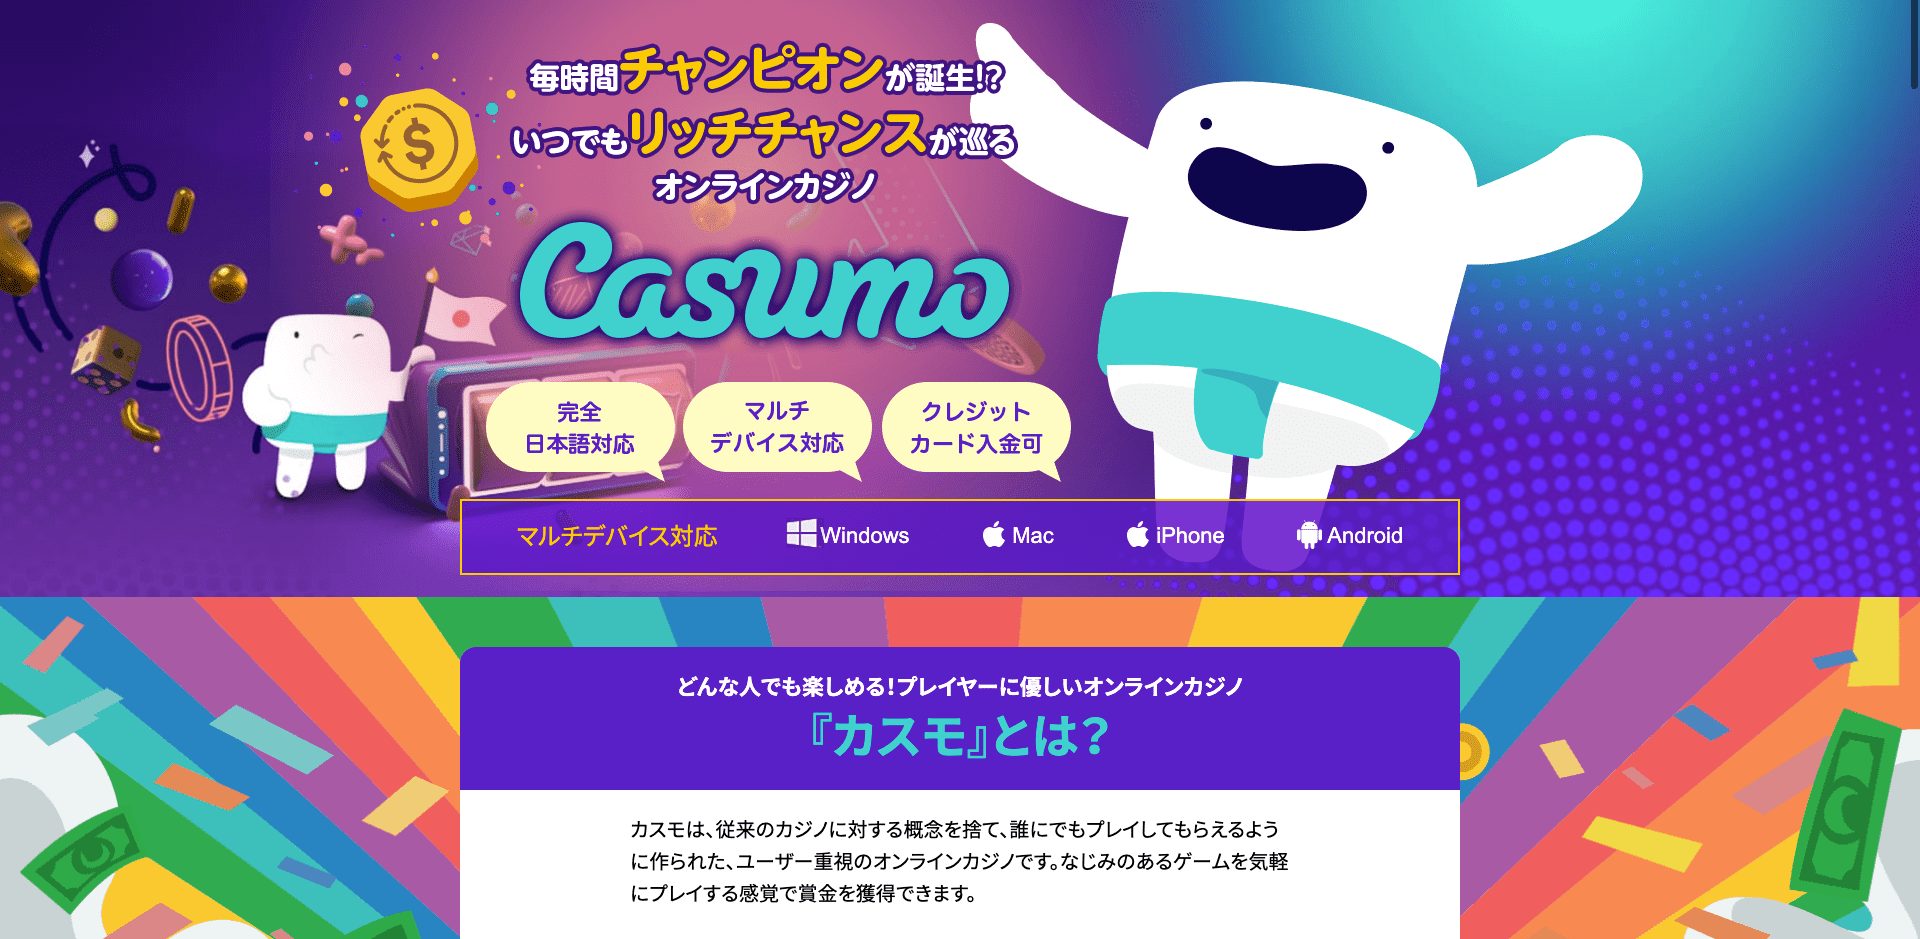 カスモ（Casumo）